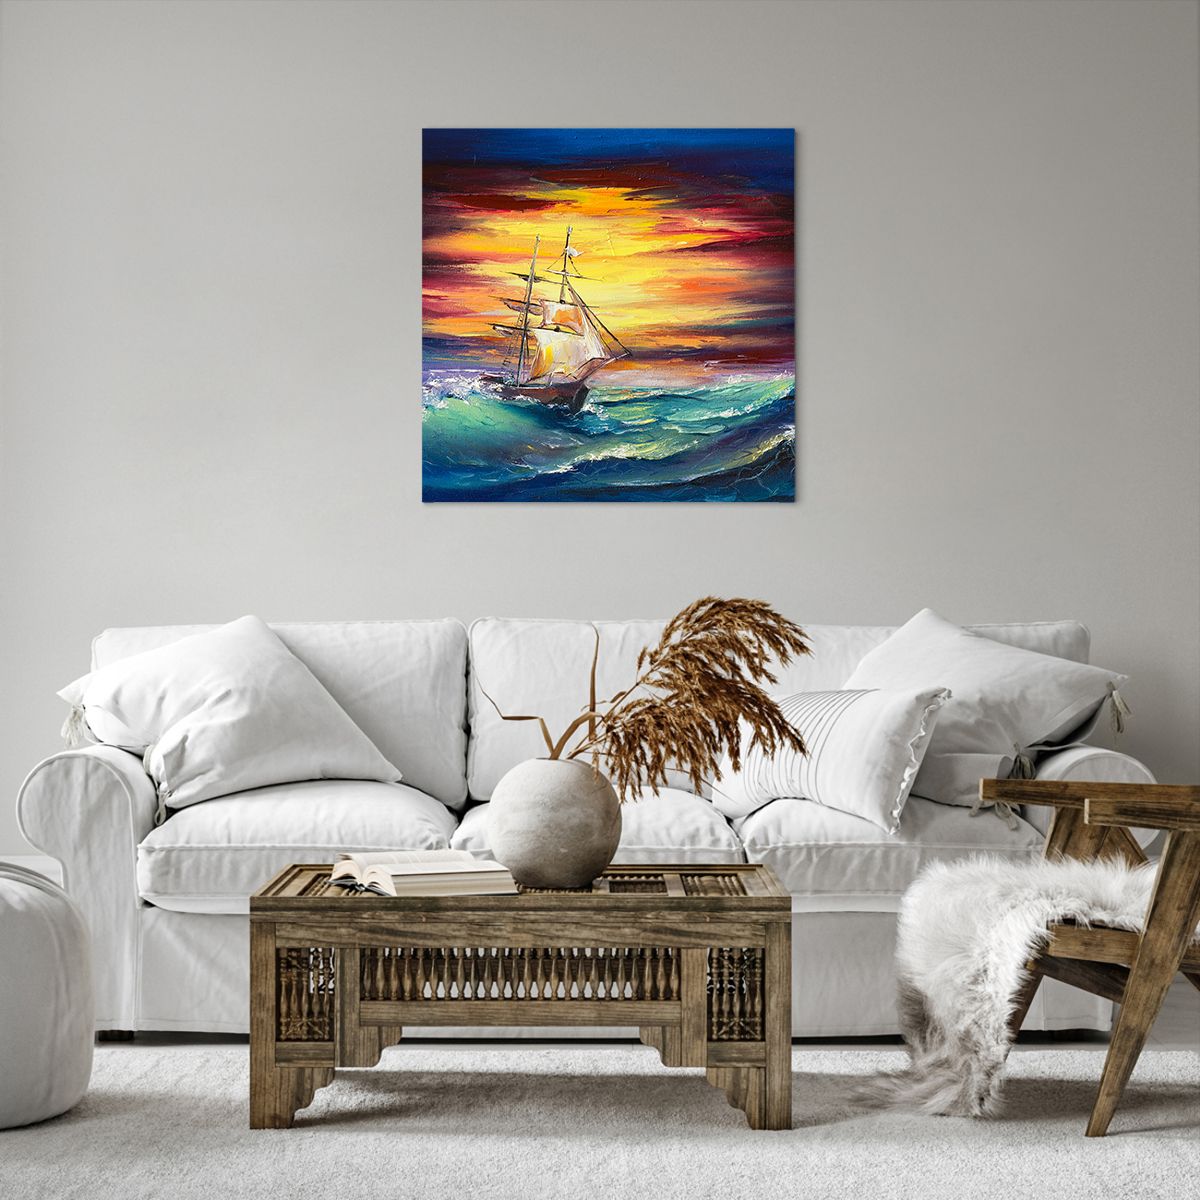 Bild auf Leinwand Segelschiff, Bild auf Leinwand Meer, Bild auf Leinwand Sturm, Bild auf Leinwand Wellen, Bild auf Leinwand Marine